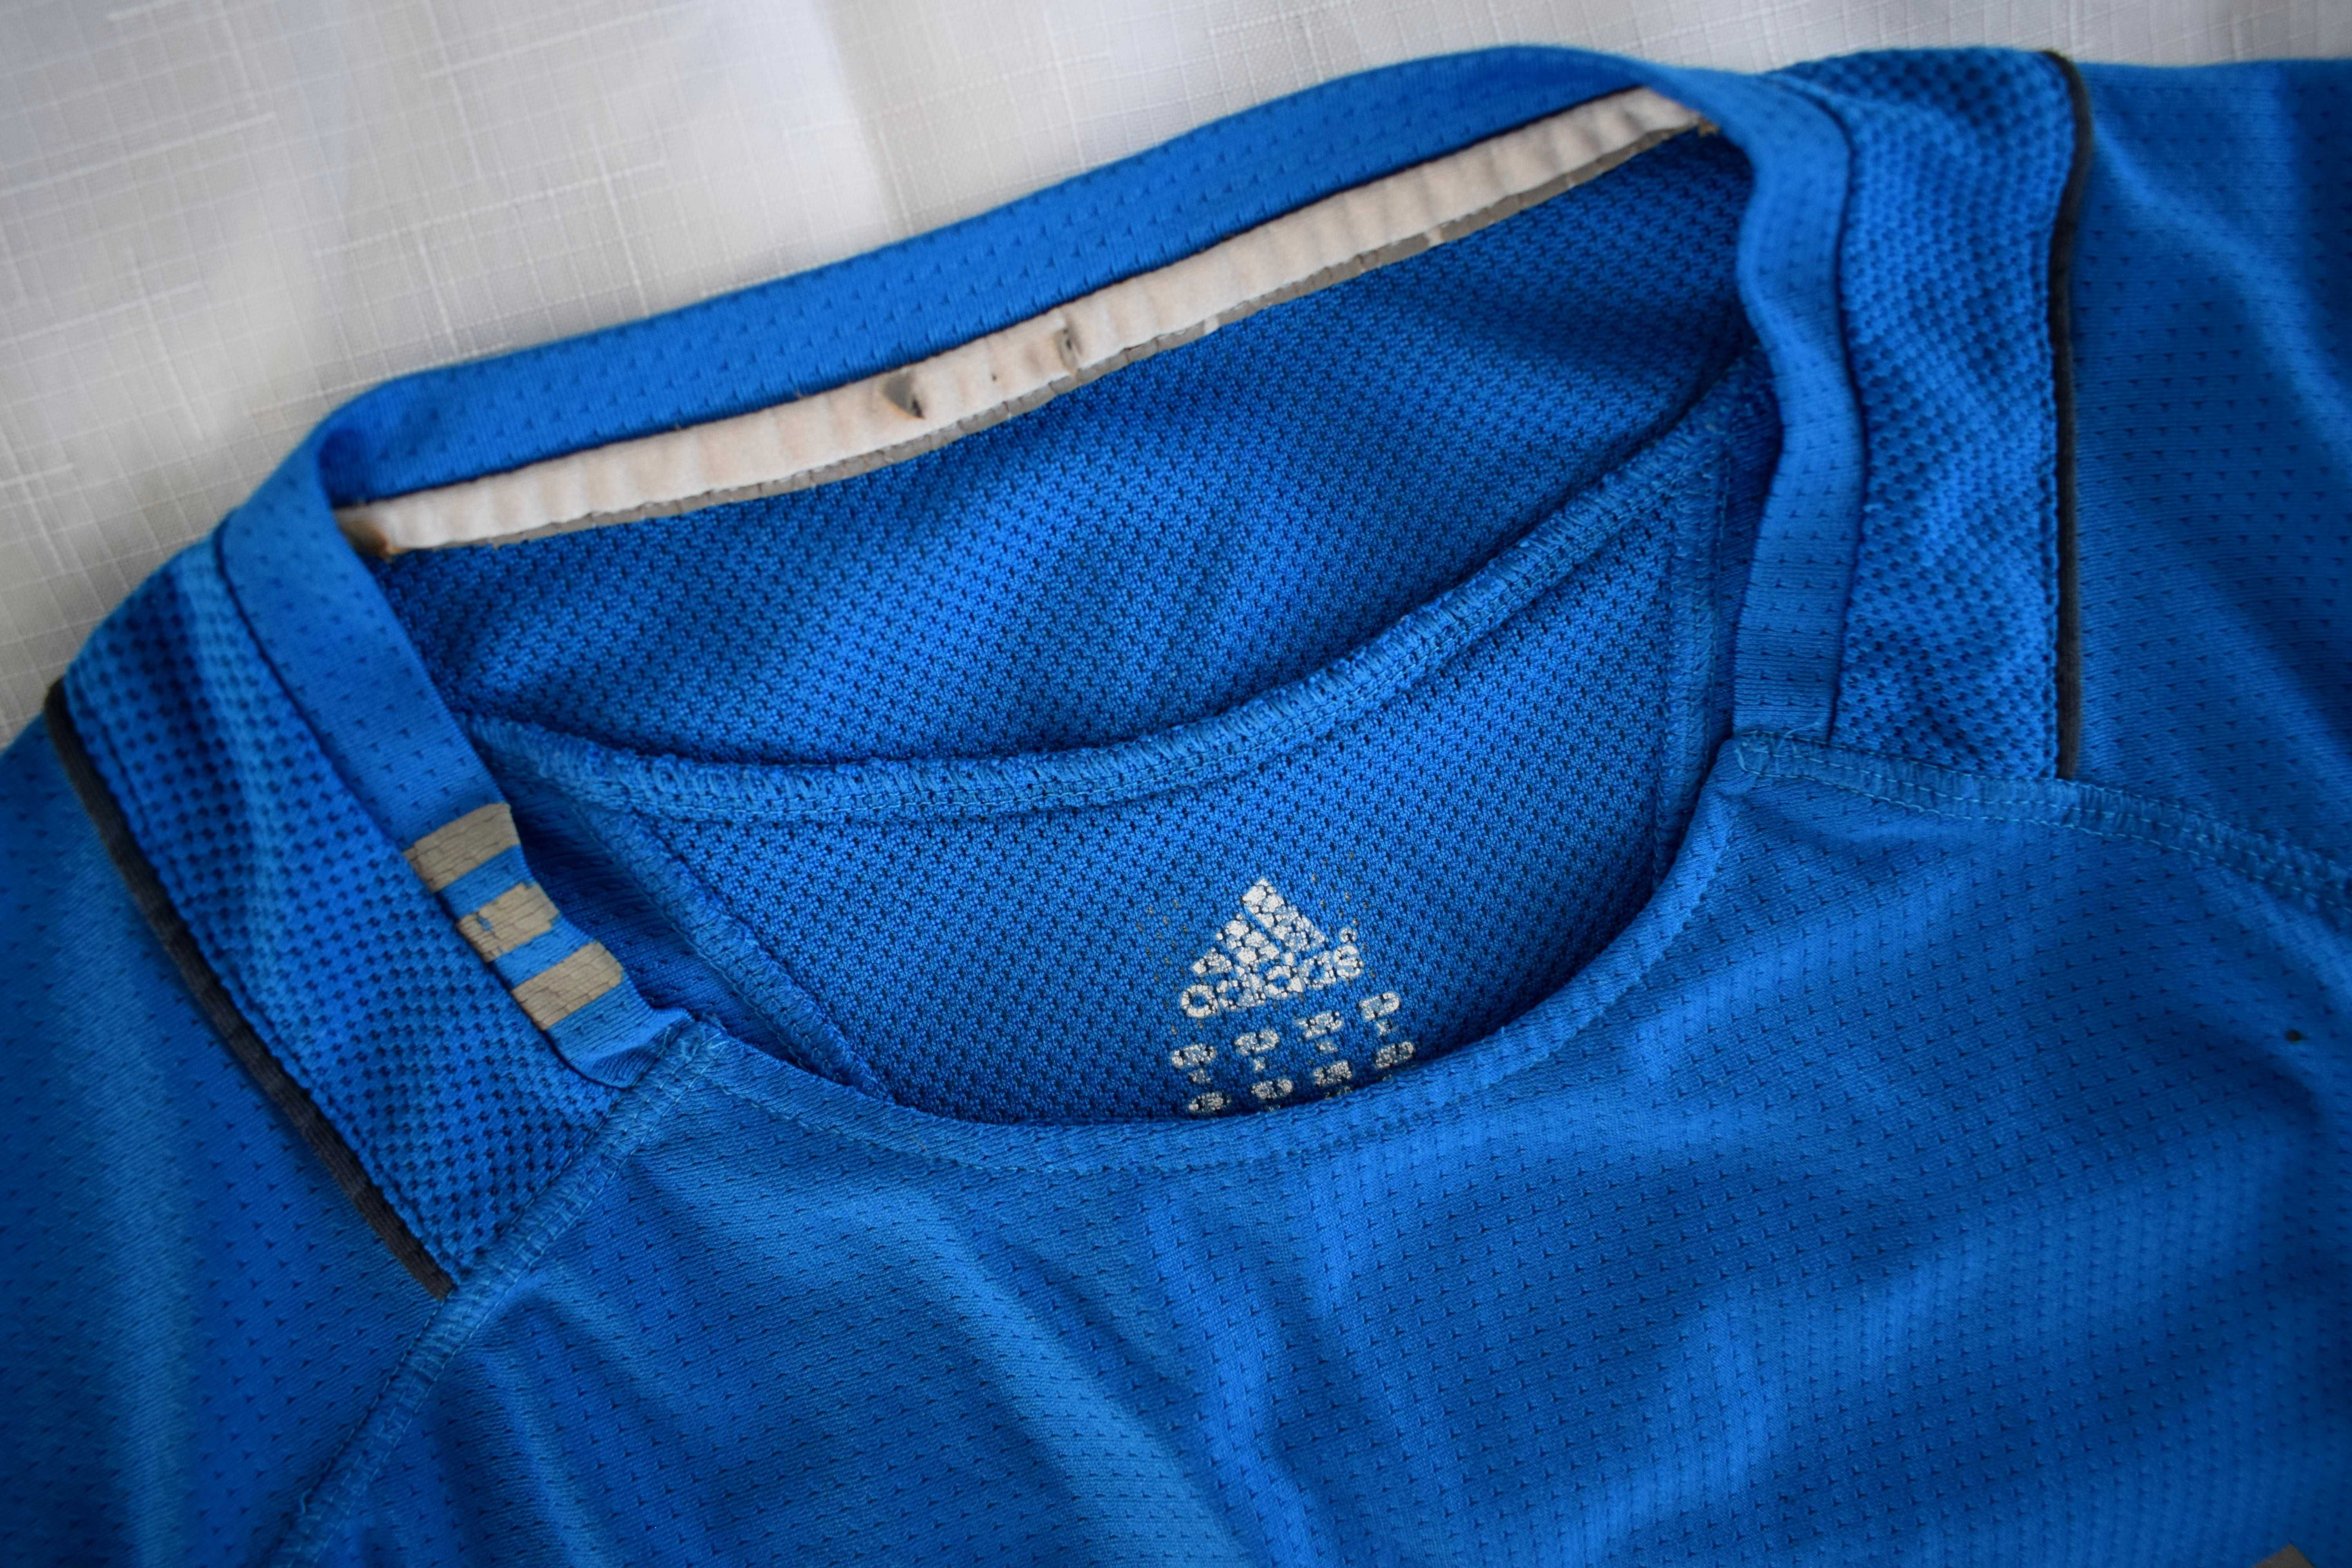 Koszulka sportowa Adidas Climacool 42